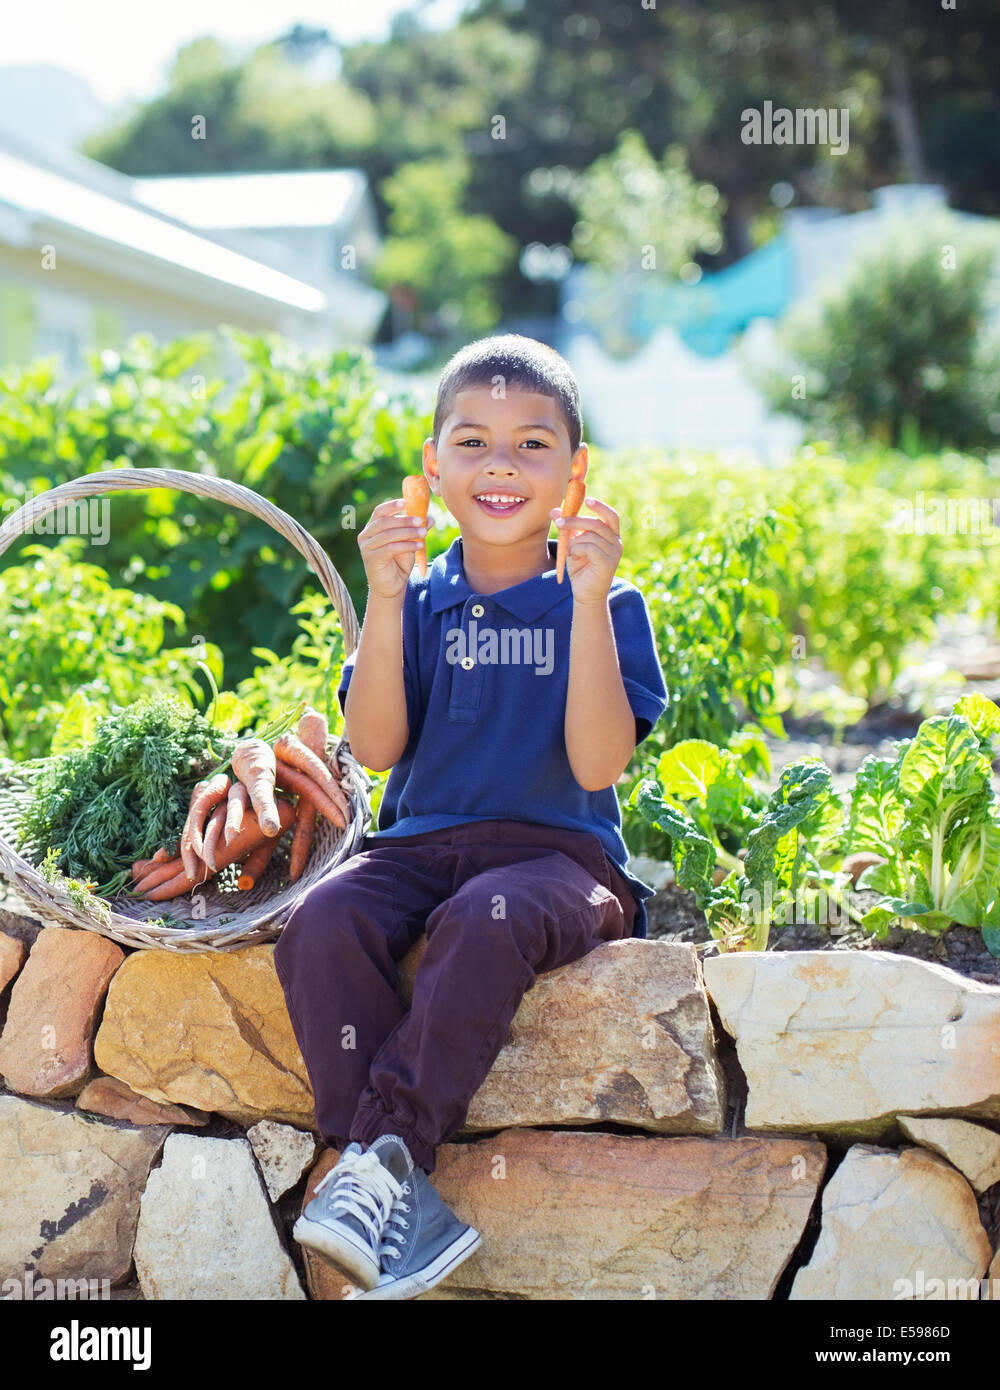 Junge mit Korb von Produkten im Garten Stockfoto